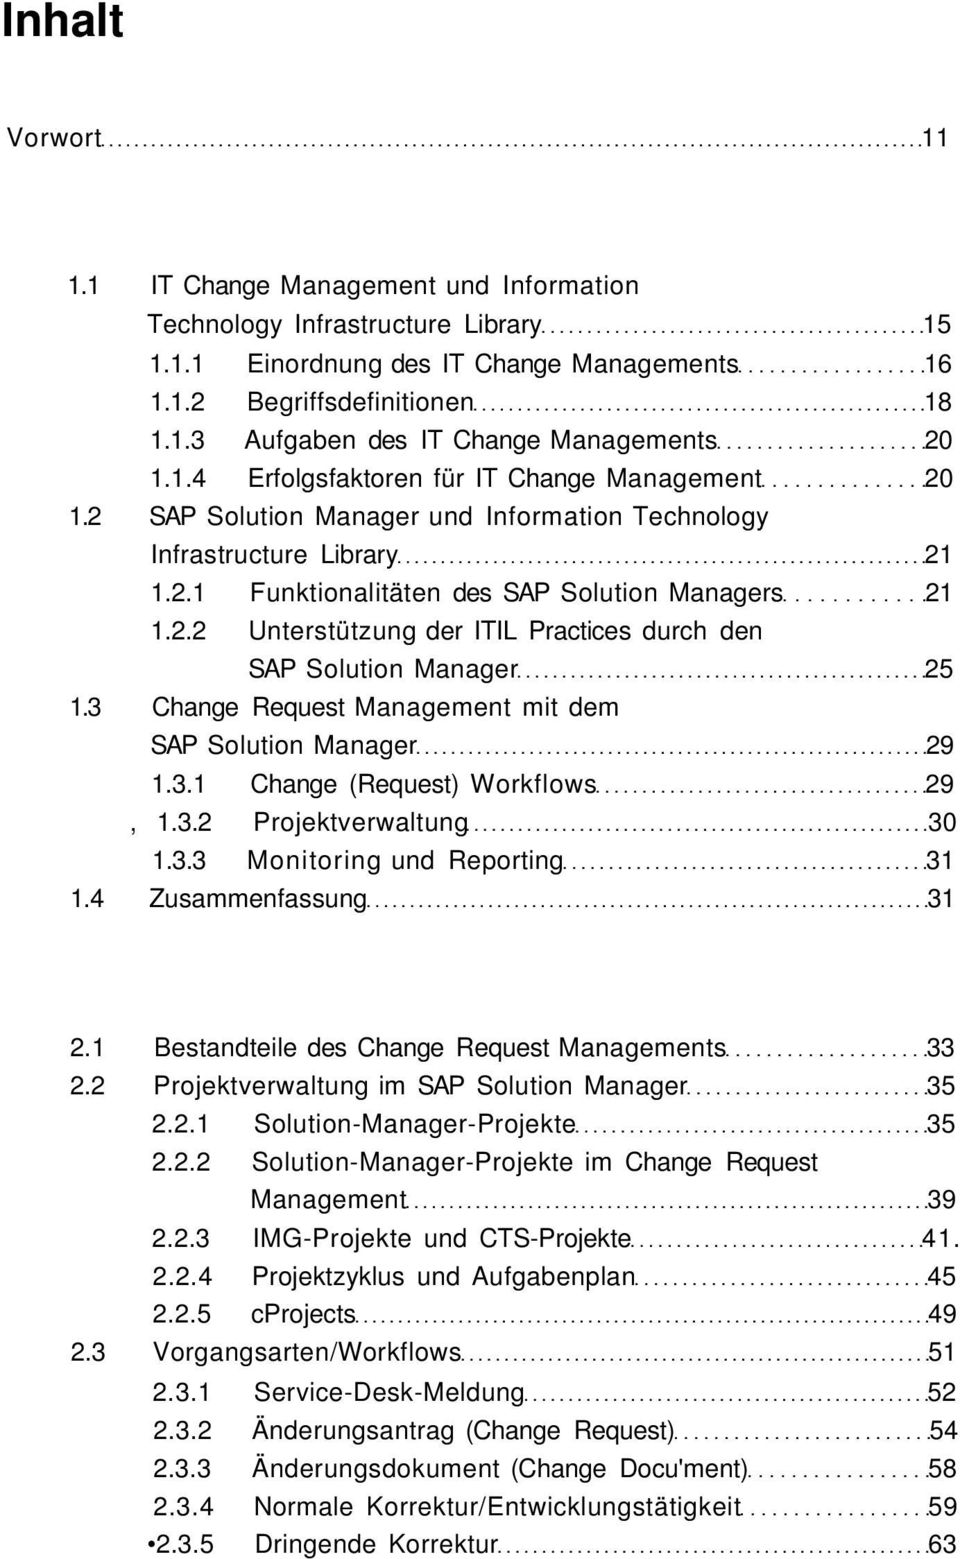 3 Change Request Management mit dem SAP Solution Manager 29 1.3.1 Change (Request) Workflows 29, 1.3.2 Projektverwaltung 30 1.3.3 Monitoring und Reporting 31 1.4 Zusammenfassung 31 2.